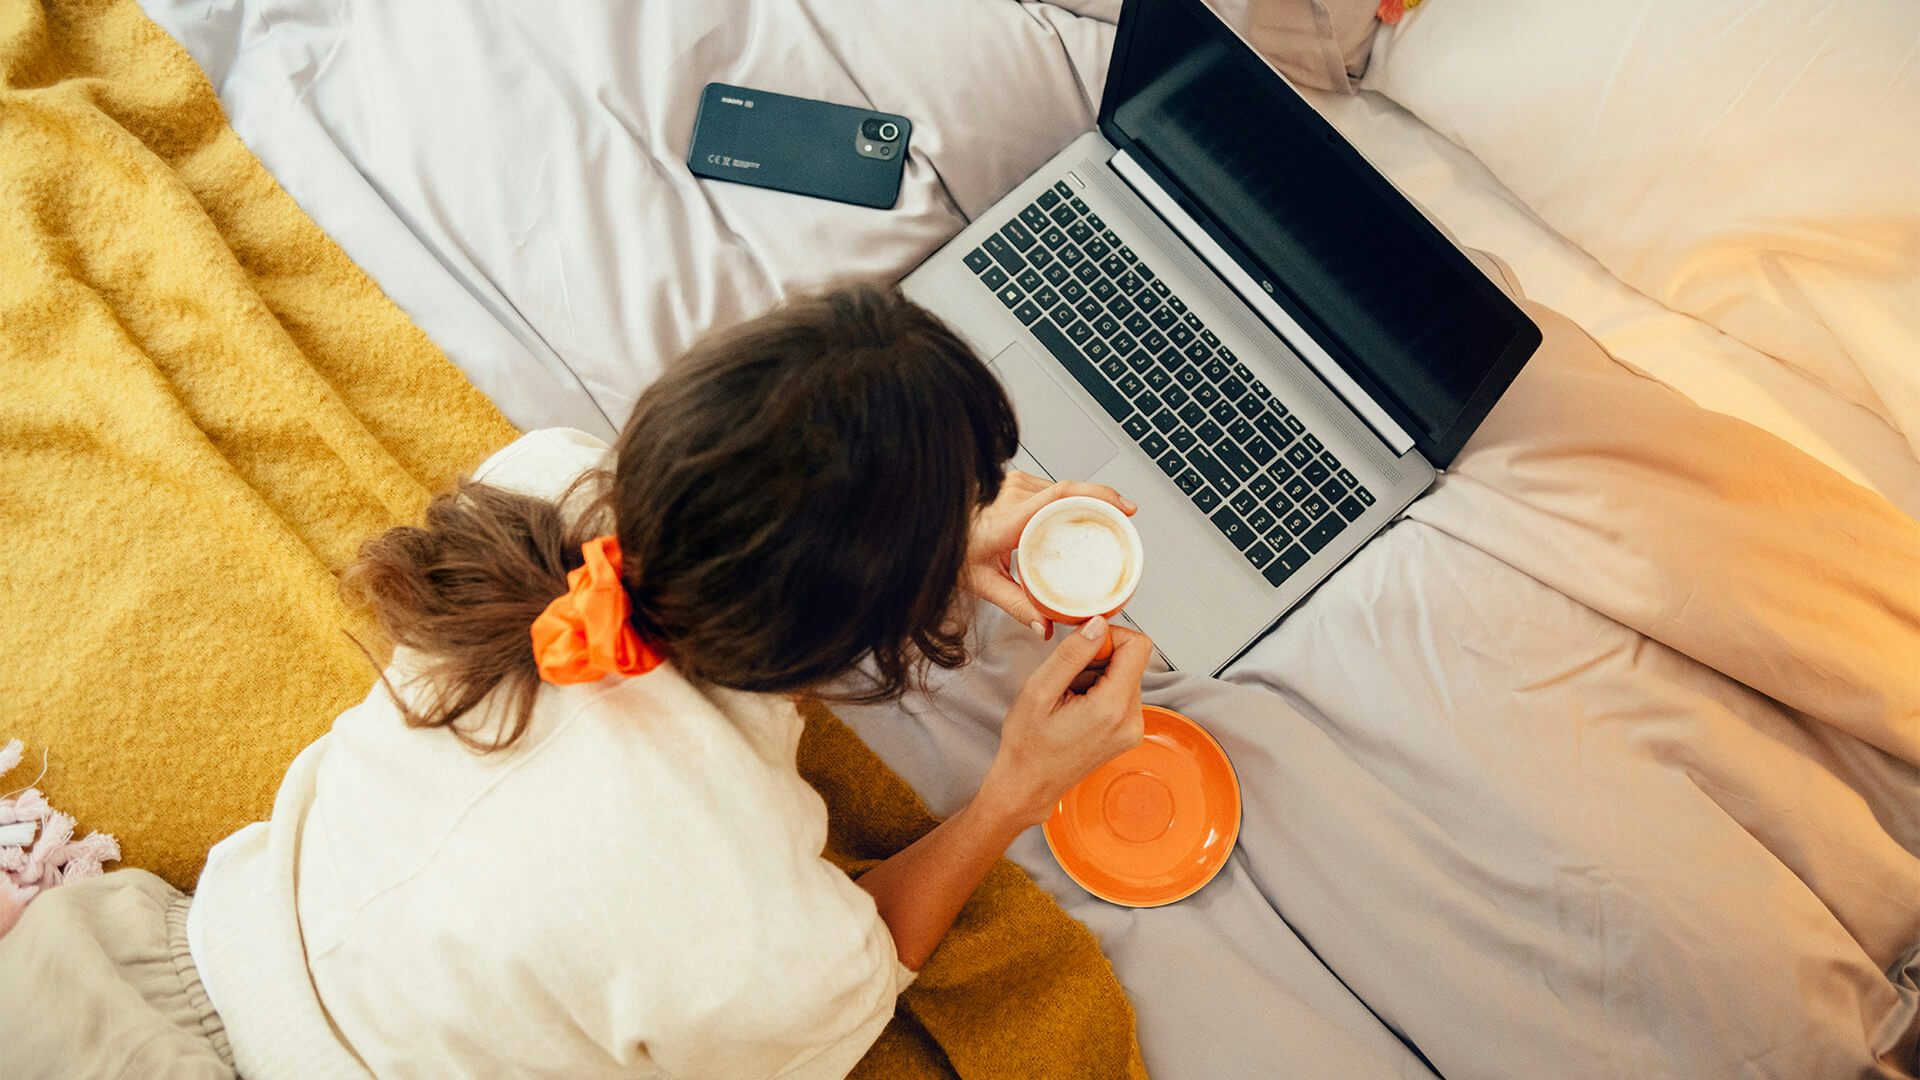 Kvinna dricker kaffe i sängen medan hon surfar på sin dator. Bredvid sig har hon sin mobil